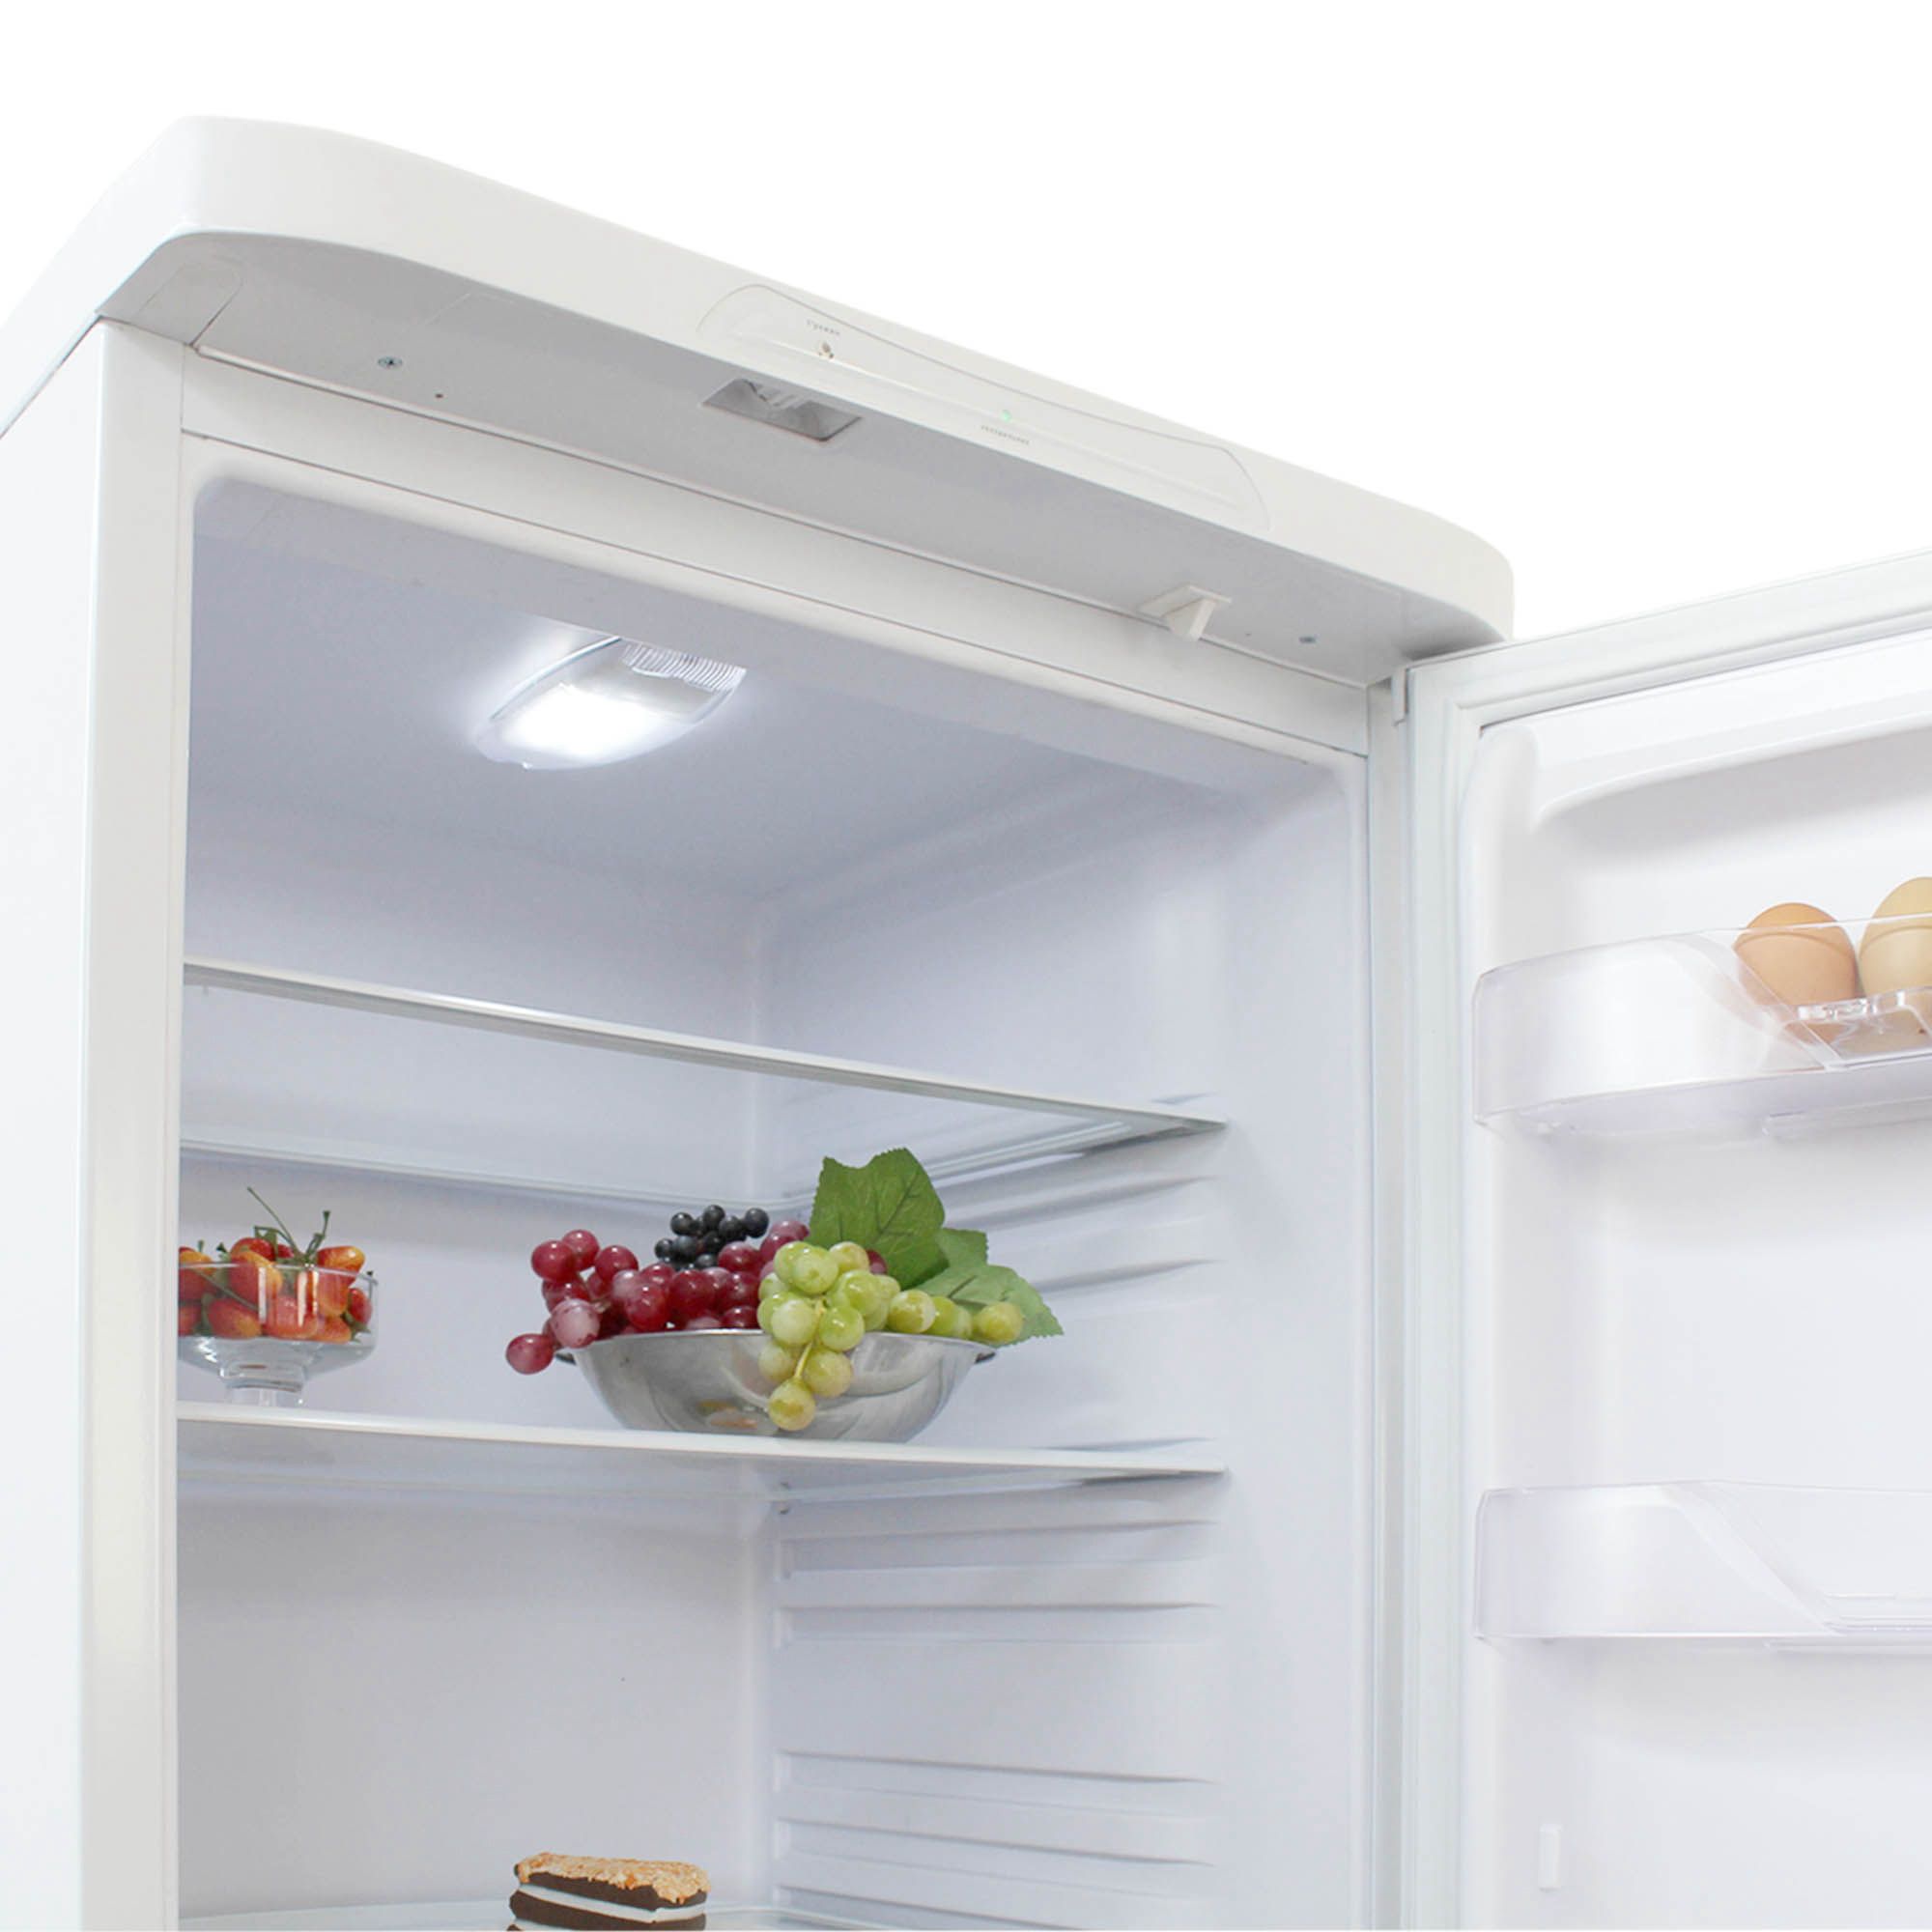 холодильник бирюса 542, купить в Красноярске холодильник бирюса 542,  купить в Красноярске дешево холодильник бирюса 542, купить в Красноярске минимальной цене холодильник бирюса 542